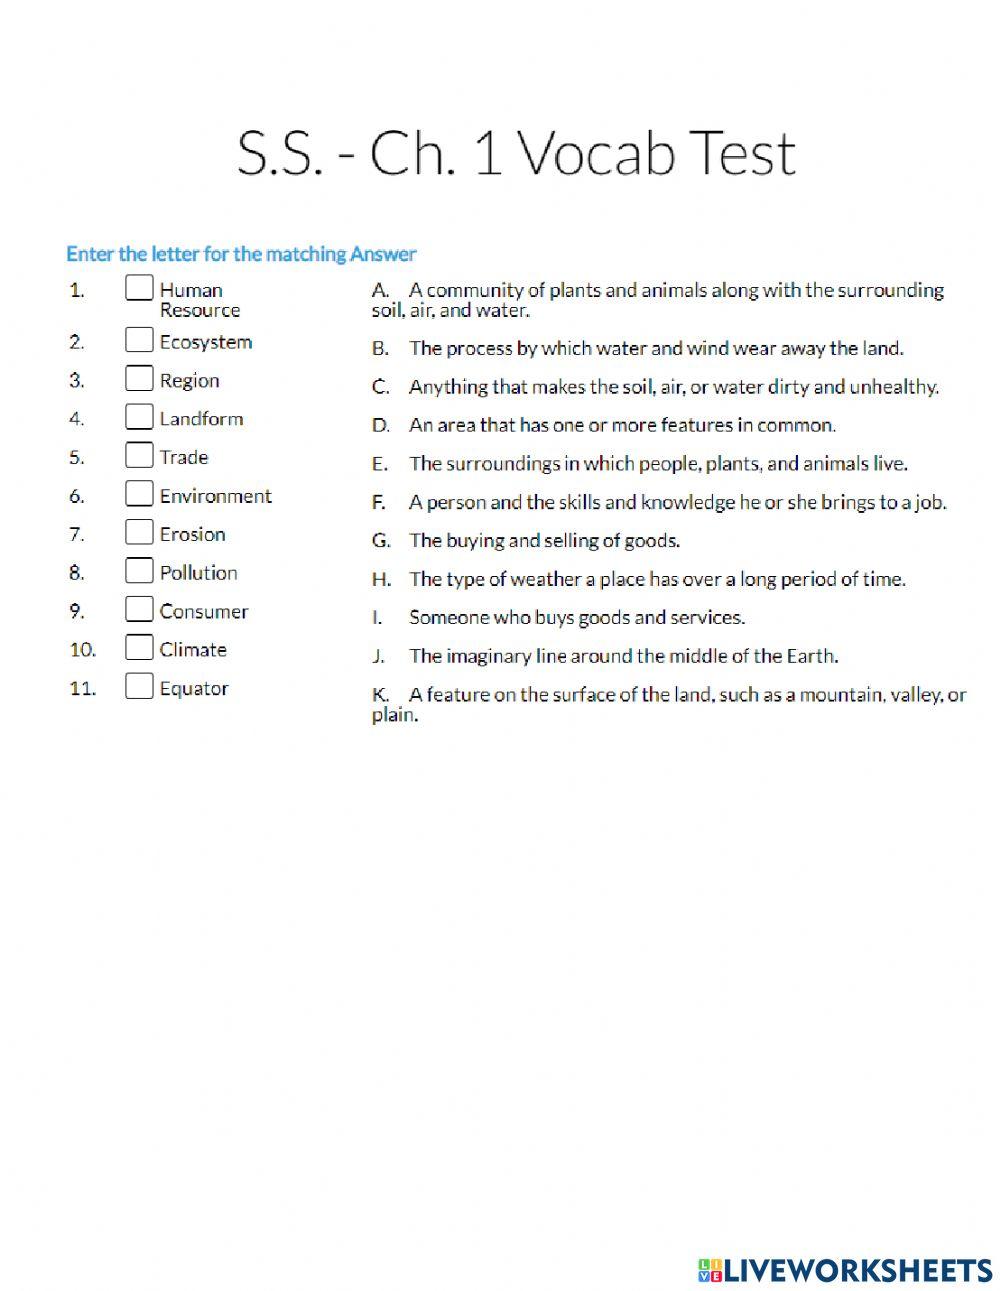 Vocab test unit 1